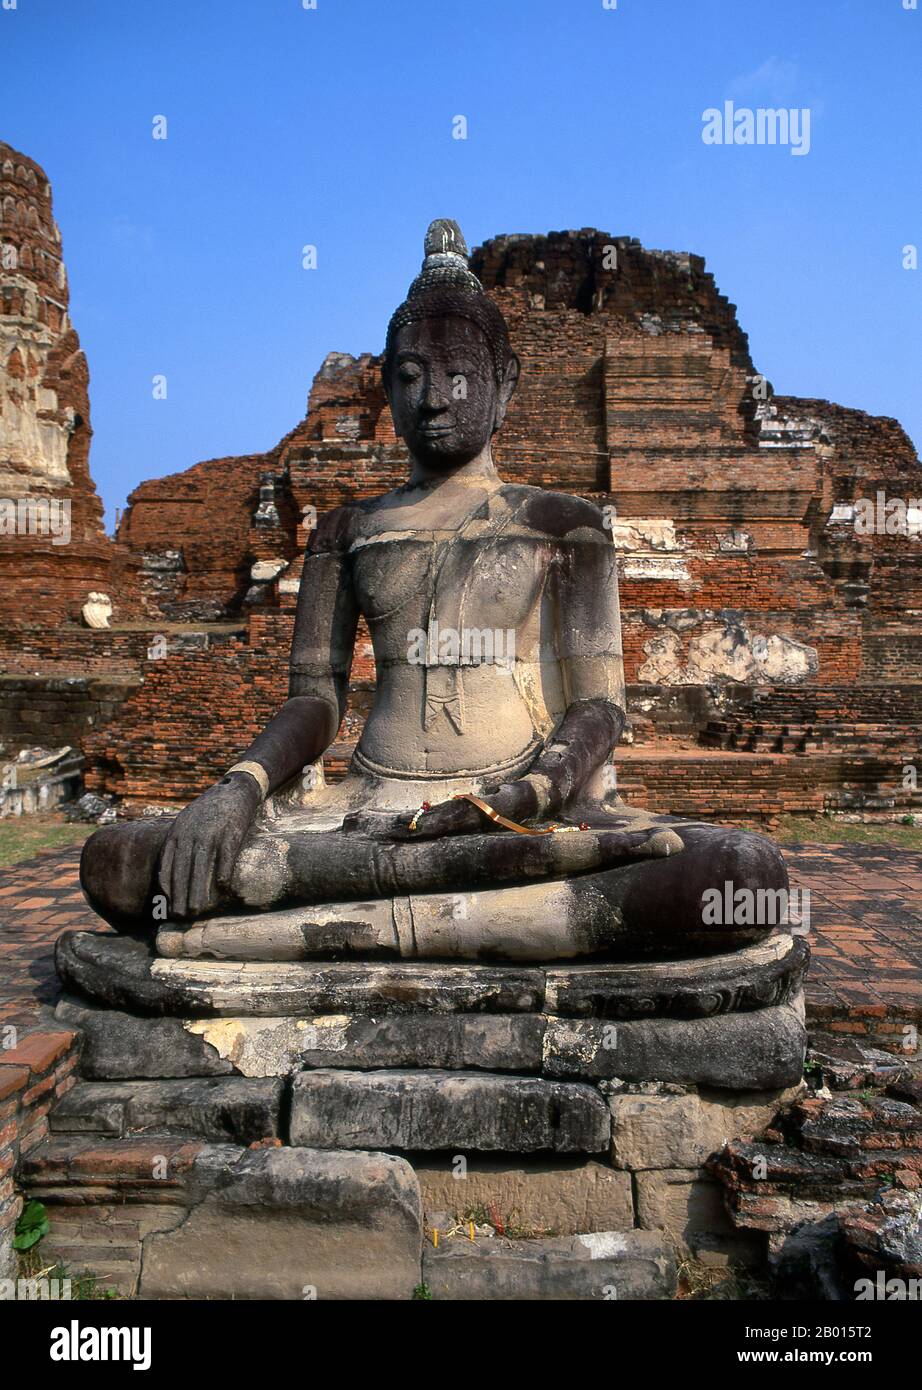 Thailandia: Buddha, Wat Phra Mahathat, Ayutthaya Historical Park. Wat Phra Mahathat fu costruito durante il regno di Borommaracha i (Boromma Rachathirat i) o Khun Luang Pa Ngua (1370-1388), che era il terzo re del regno di Ayutthaya. Ayutthaya (Ayudhya) era un regno siamese che esisteva dal 1351 al 1767. Ayutthaya era amichevole verso i commercianti stranieri, compreso il cinese, vietnamita (Annamese), indiani, giapponesi e persiani, E poi i portoghesi, spagnoli, olandesi e francesi, permettendo loro di creare villaggi fuori dalle mura della città. Foto Stock